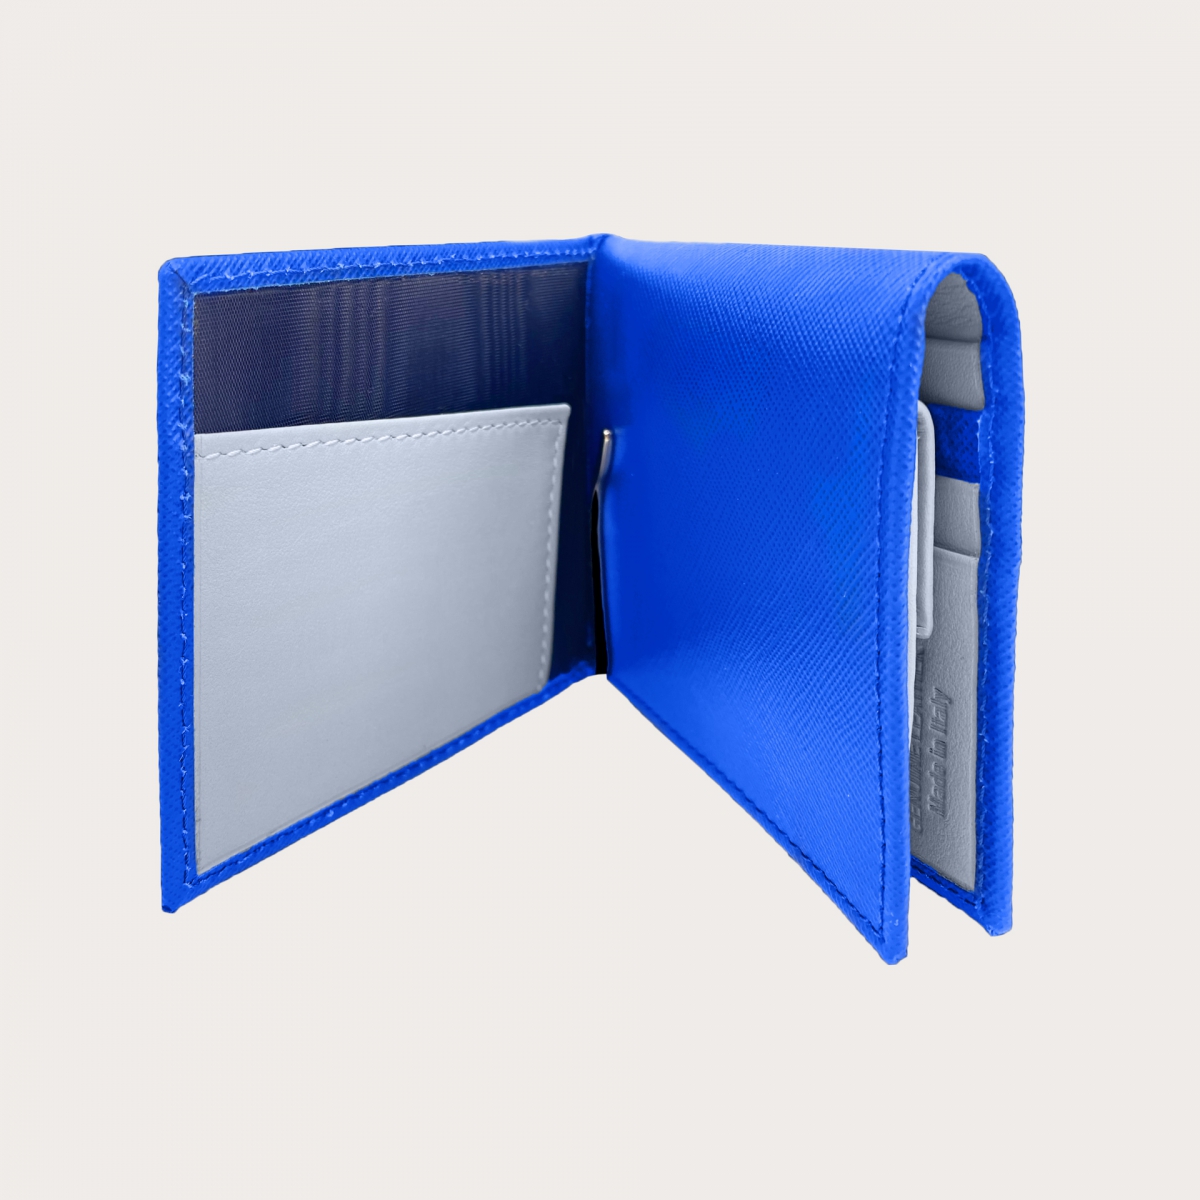 BRUCLE Mini portafoglio compatto blu royal con interno grigio cenere